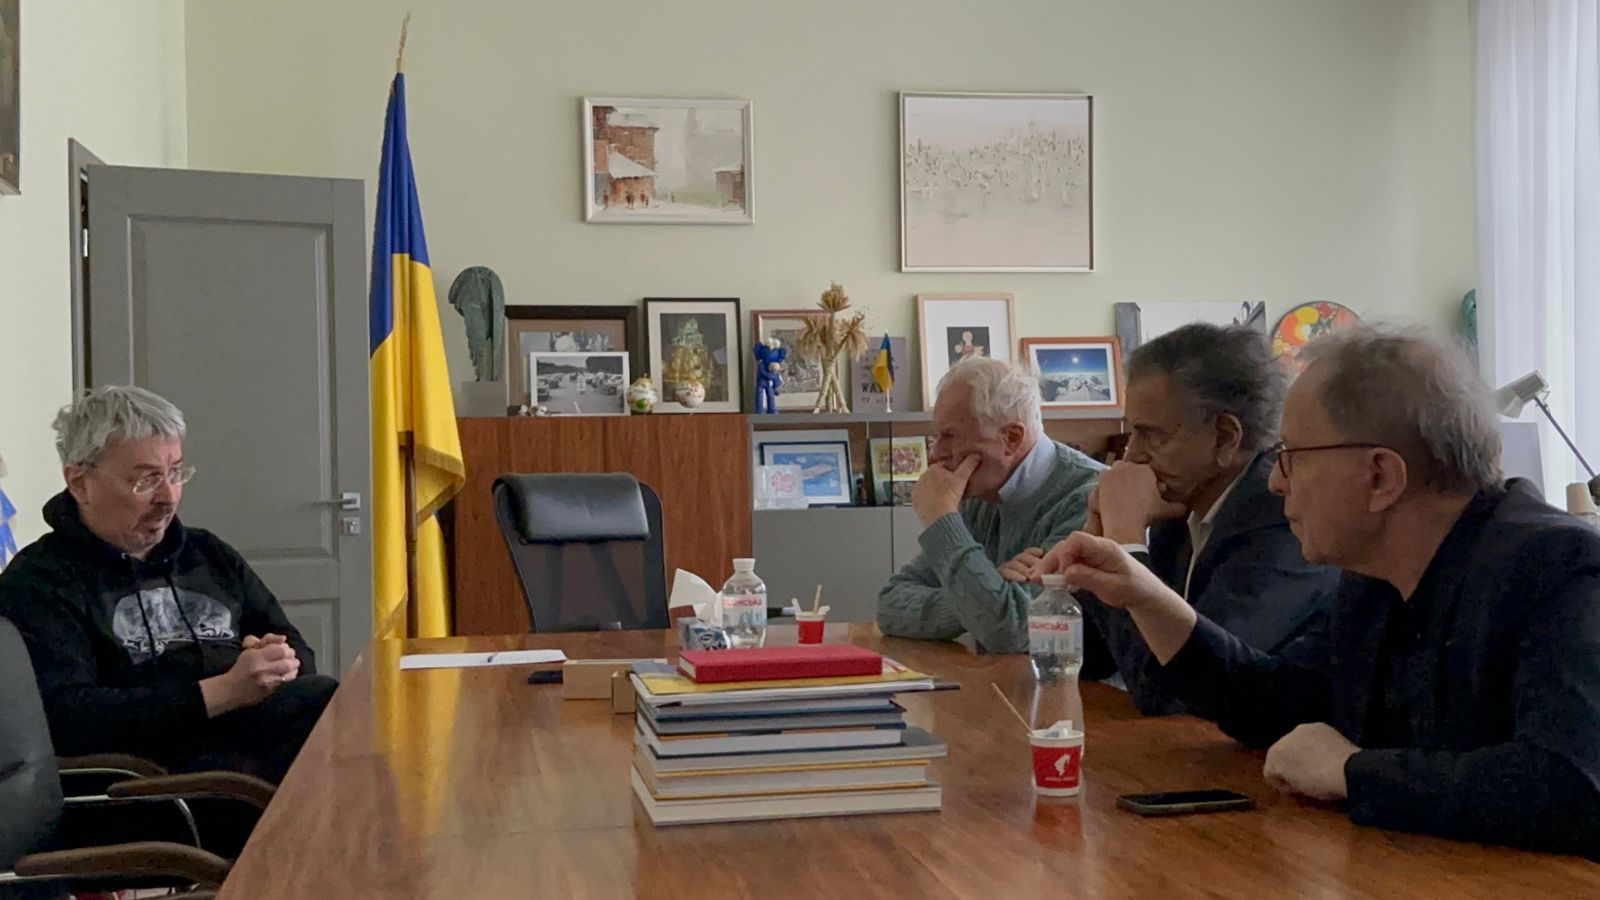 BHL, Gilles Hertzog and François Margolin talking to Minister Oleksandr Tkachenko at the Ukrainian Ministry of Culture.